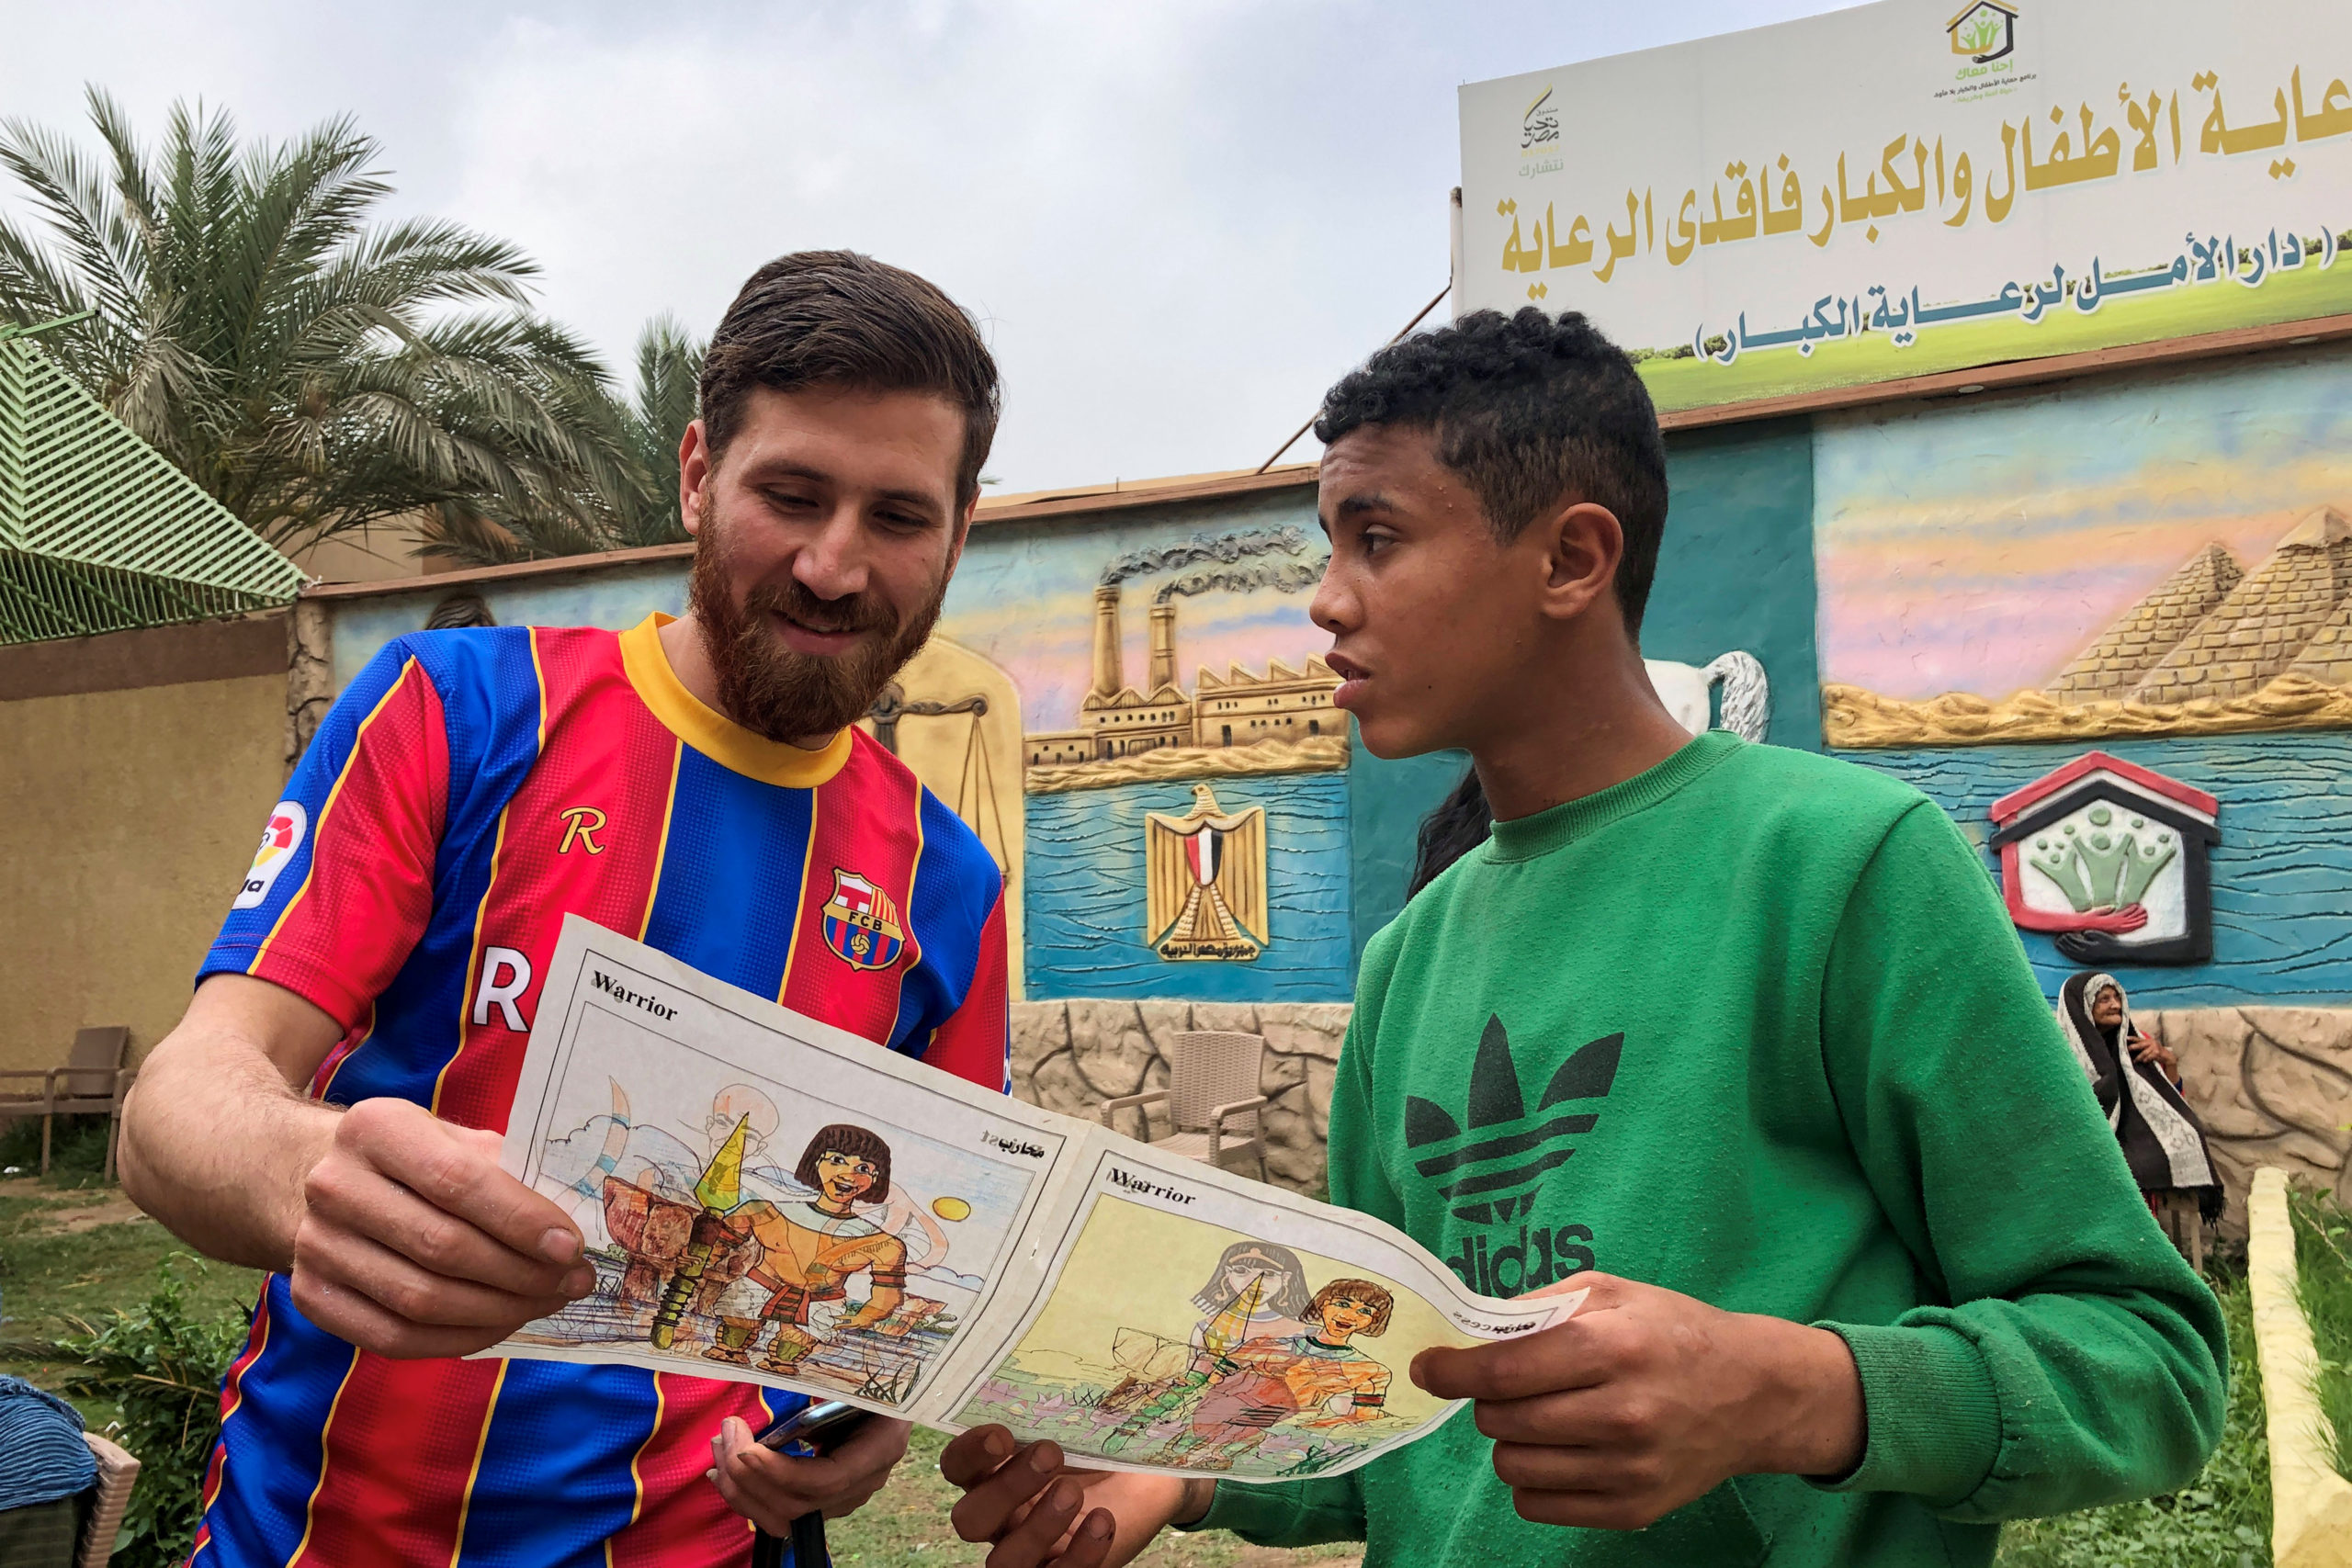 Islam Battah, le sosie de Lionel Messi fait sensation en Egypte